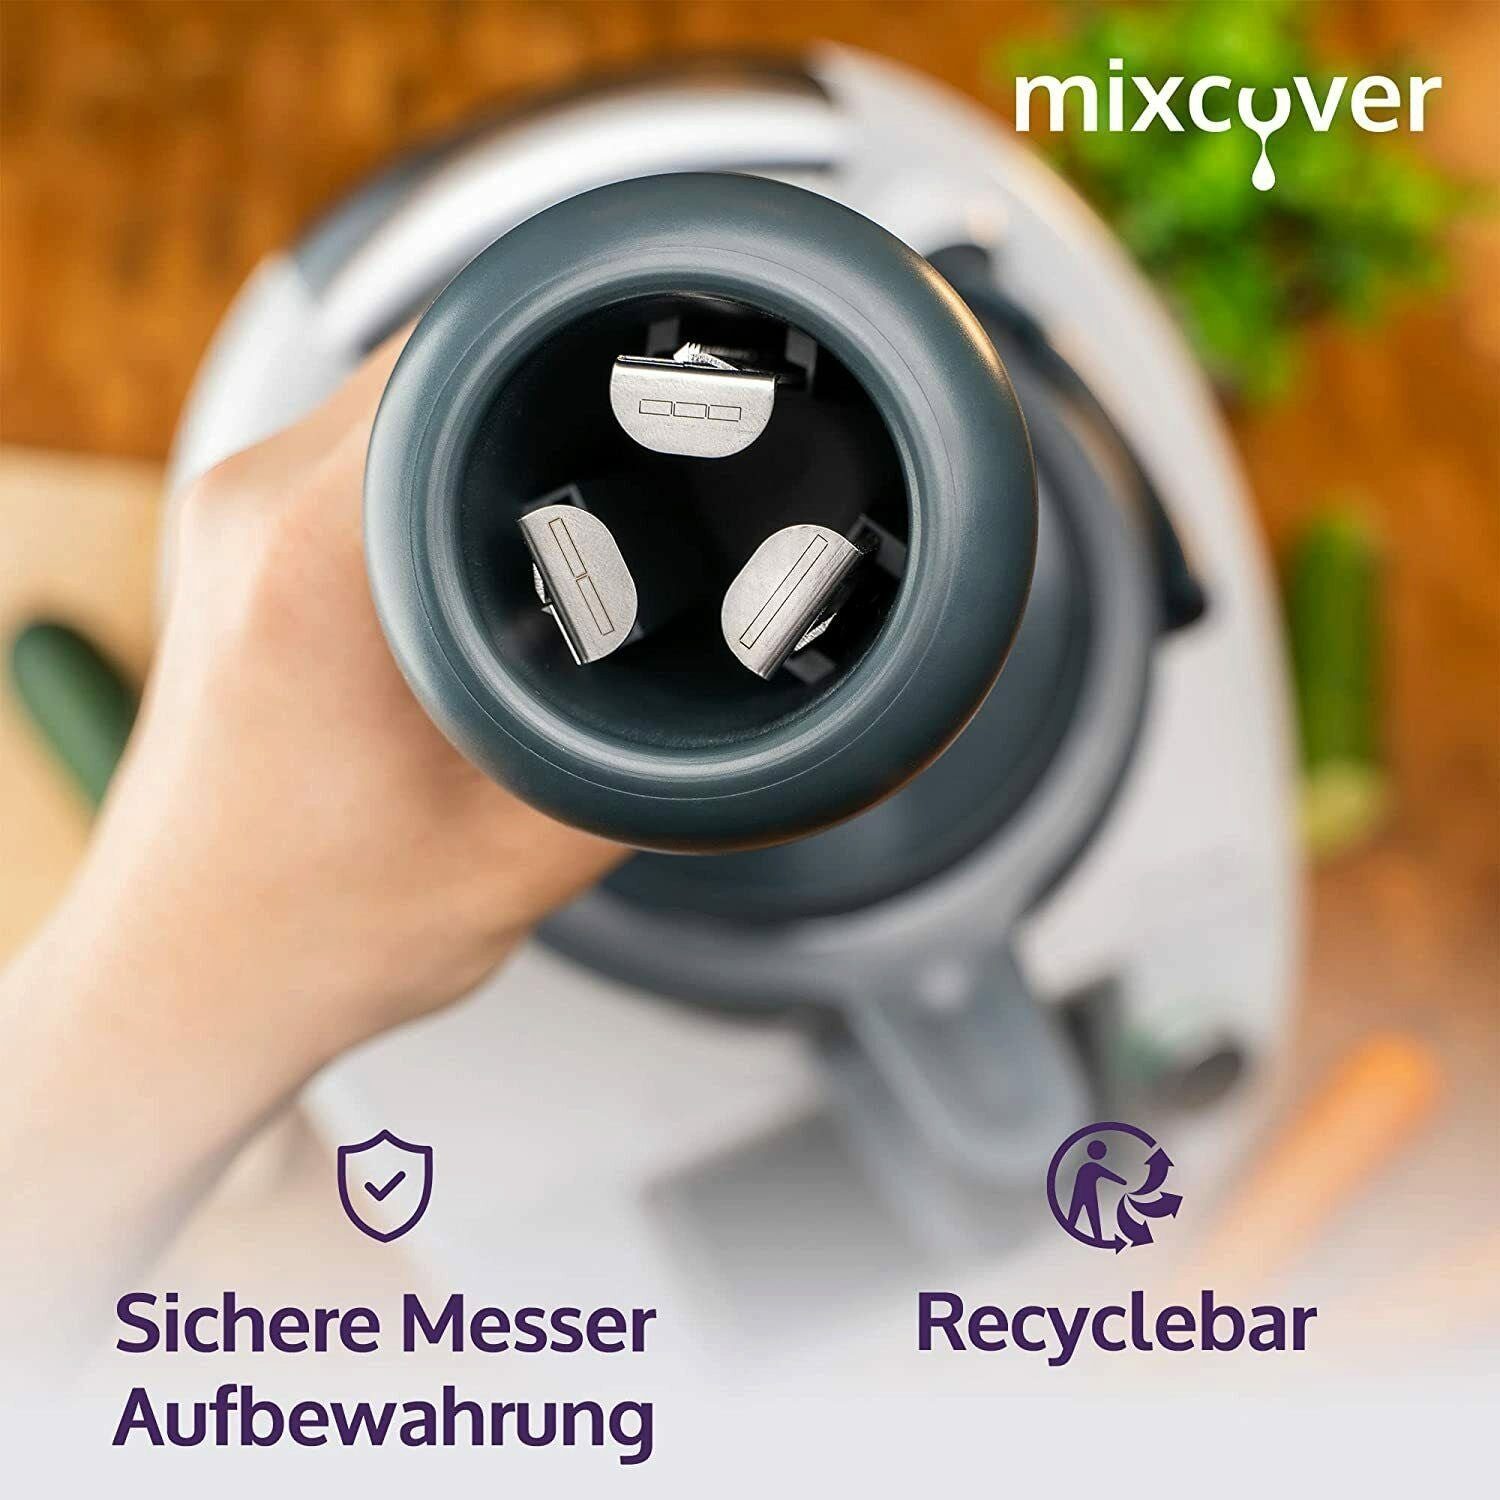 TM6 Thermomix kompatibel Küchenmaschinen-Adapter TM5 mit Mixcover mixcover Gemüsenudeln schneiden Spiralschneider